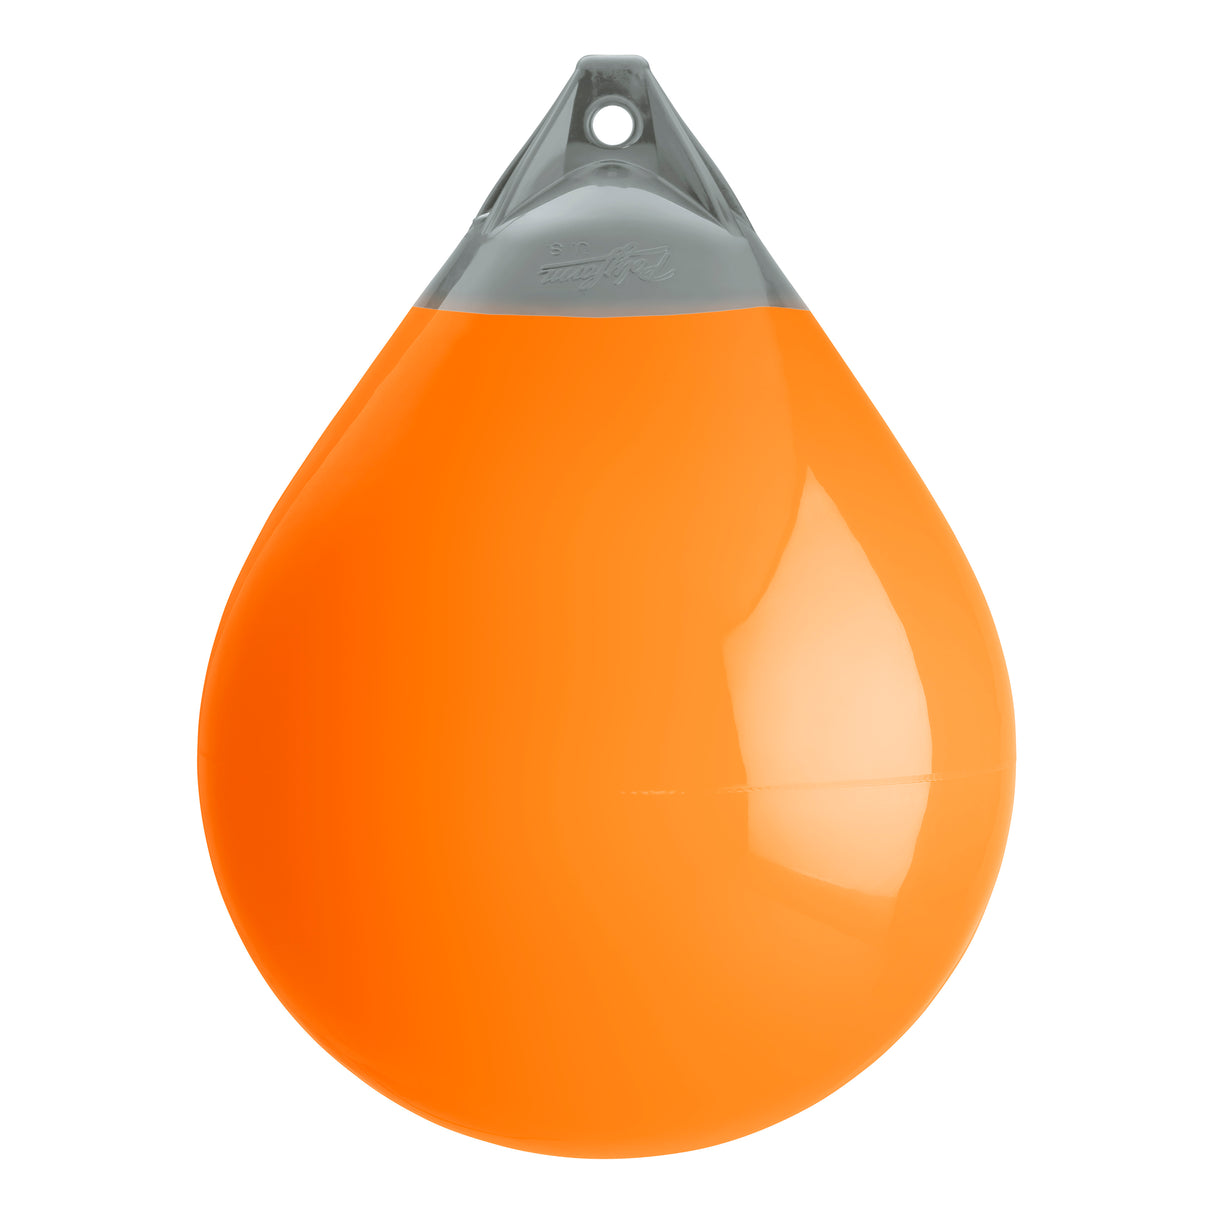 Orange buoy with Grey-Top, Polyform A-5